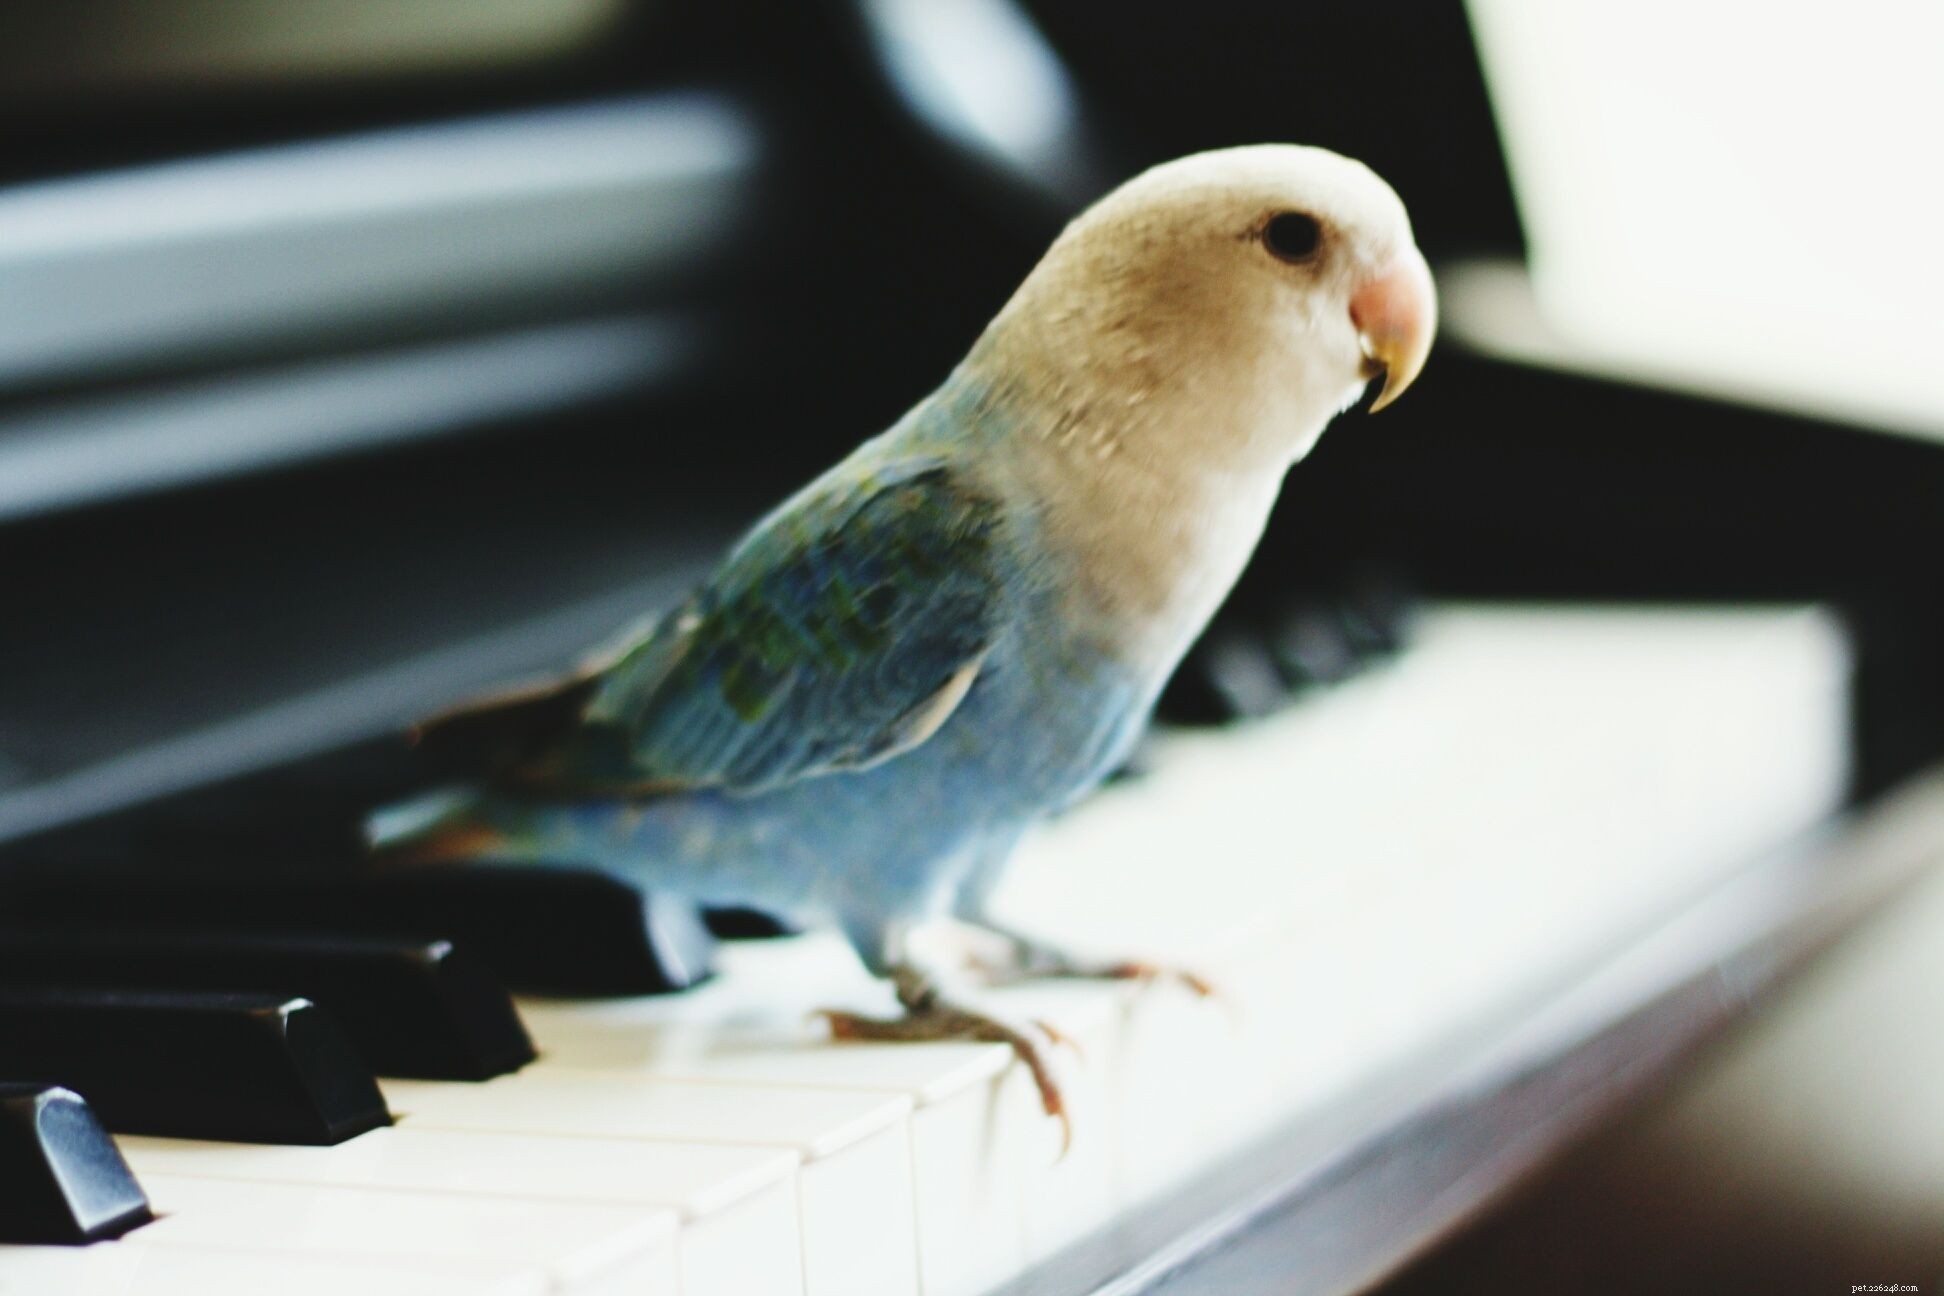 앵무새가 노래하도록 훈련시키는 방법